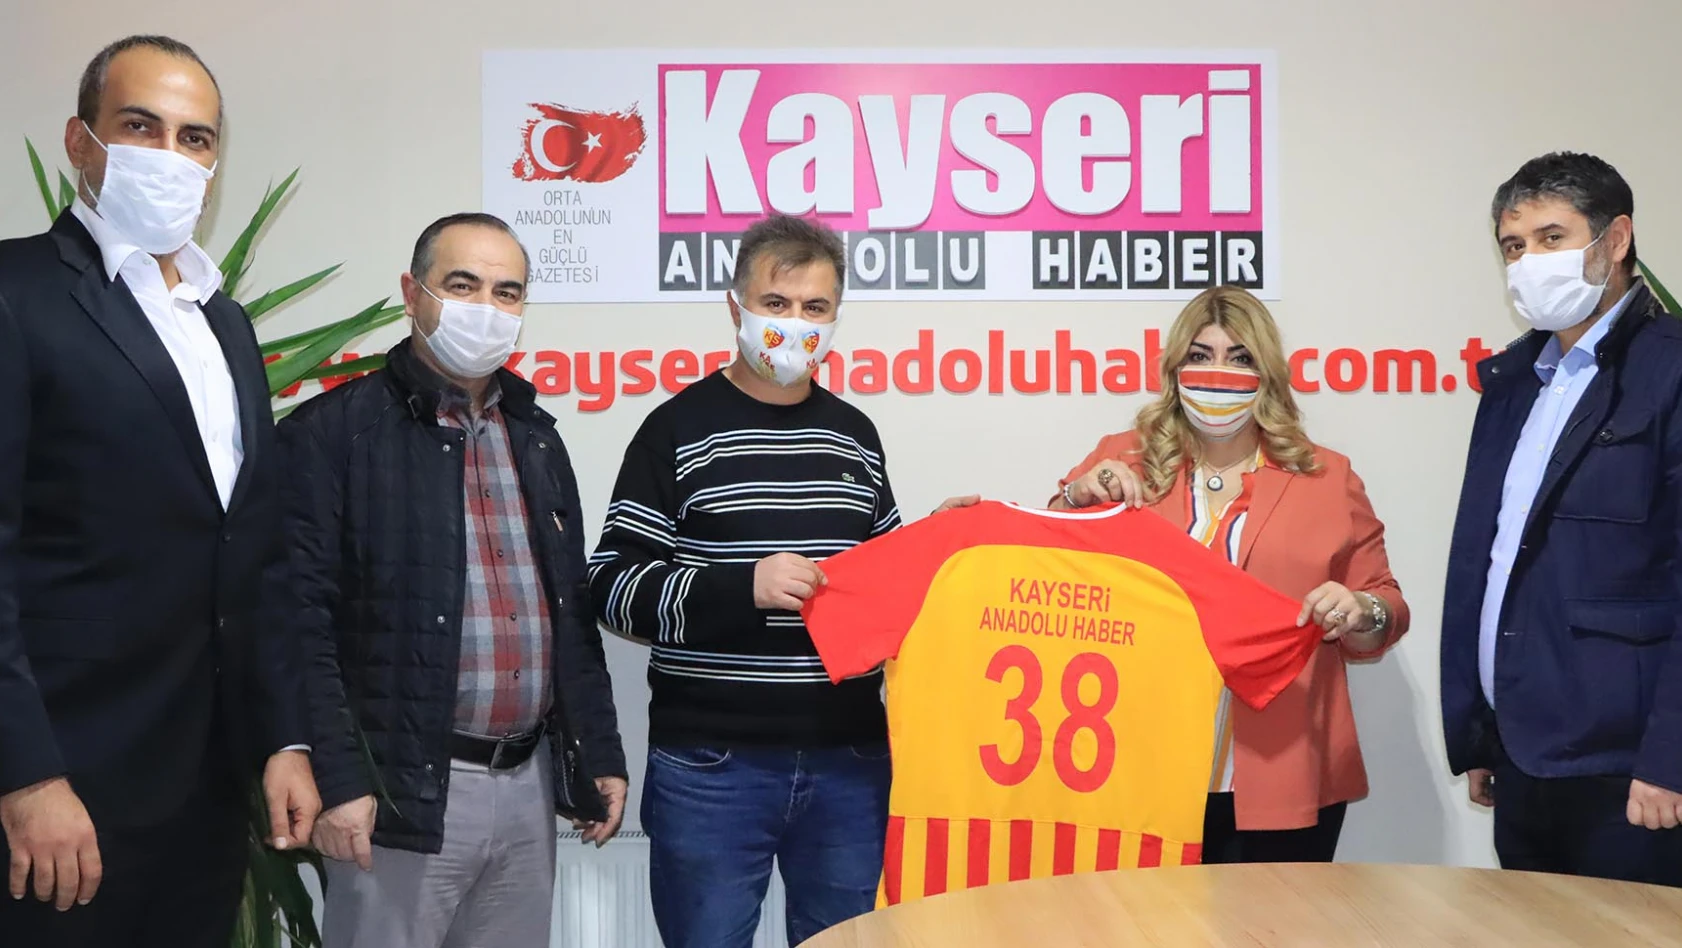 Gözbaşı ve Tokgöz, Kayseri Anadolu Haber  'i ziyaret etti [VİDEO HABER]